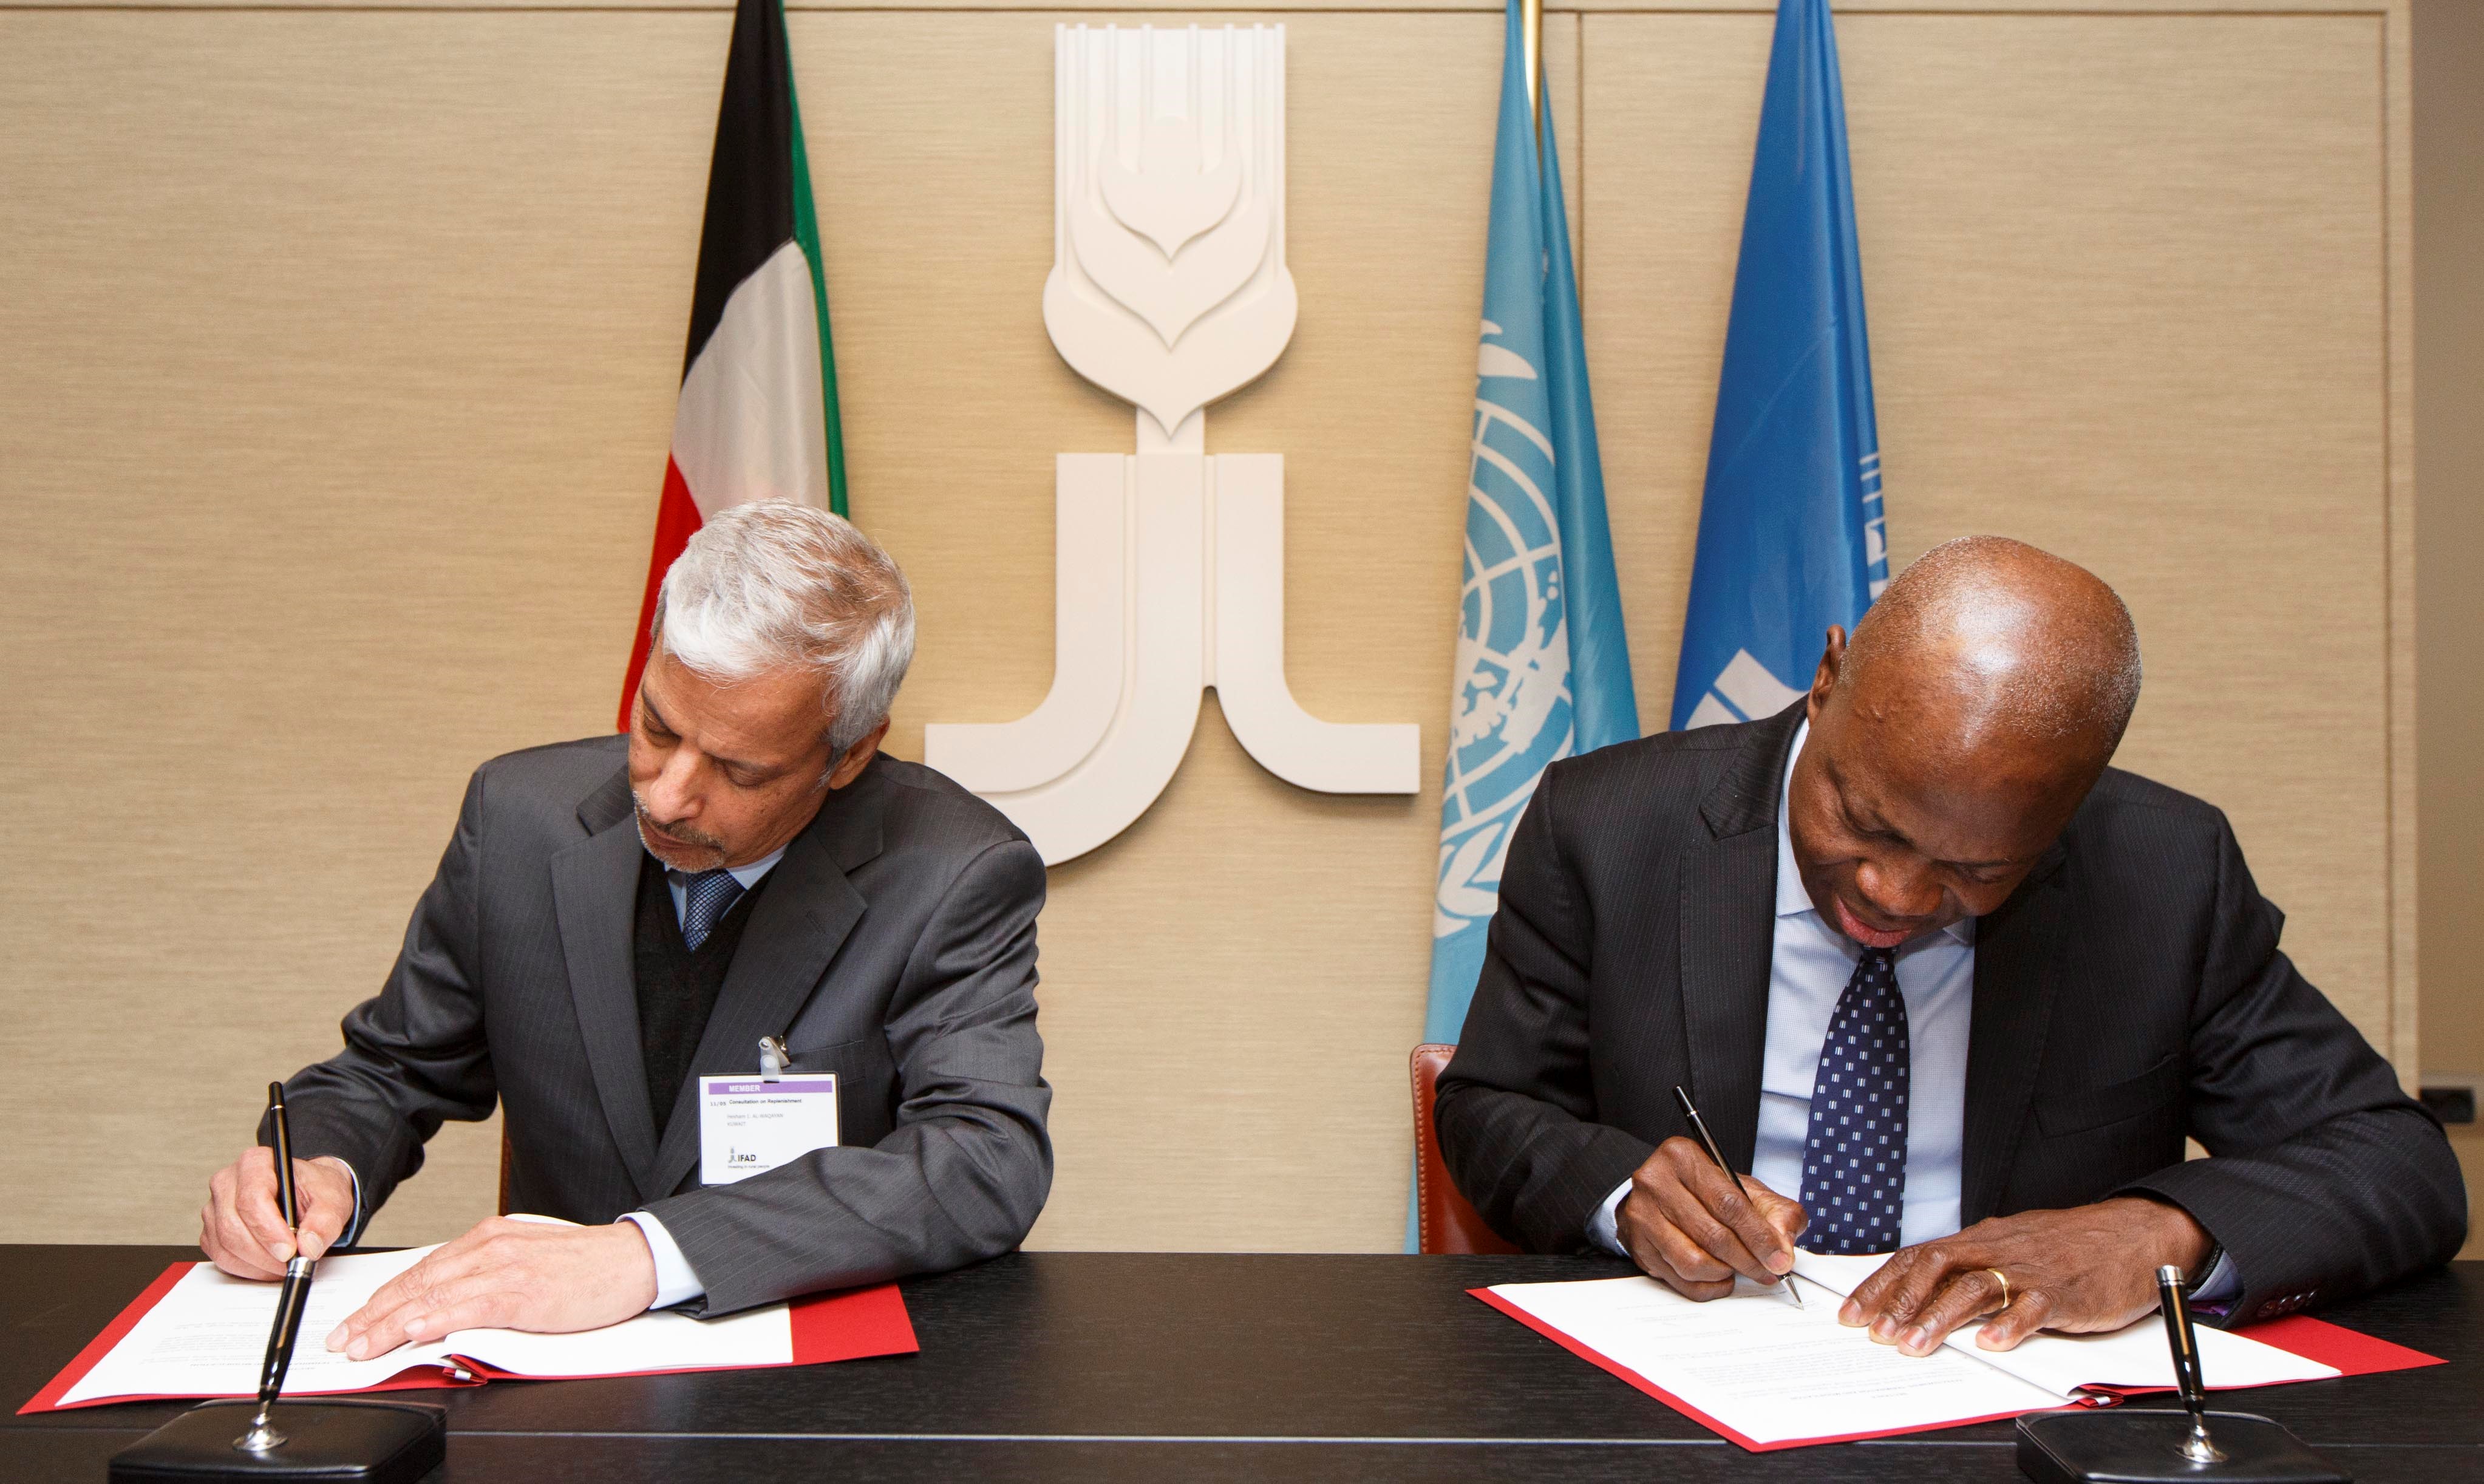 نائب المدير العام للصندوق الكويتي هشام الوقيان مع رئيس الصندوق الدولي للتنمية الريفية (ايفاد) جيلبيرت فوسون أنغبو اثناء توقيع الاتفاقية